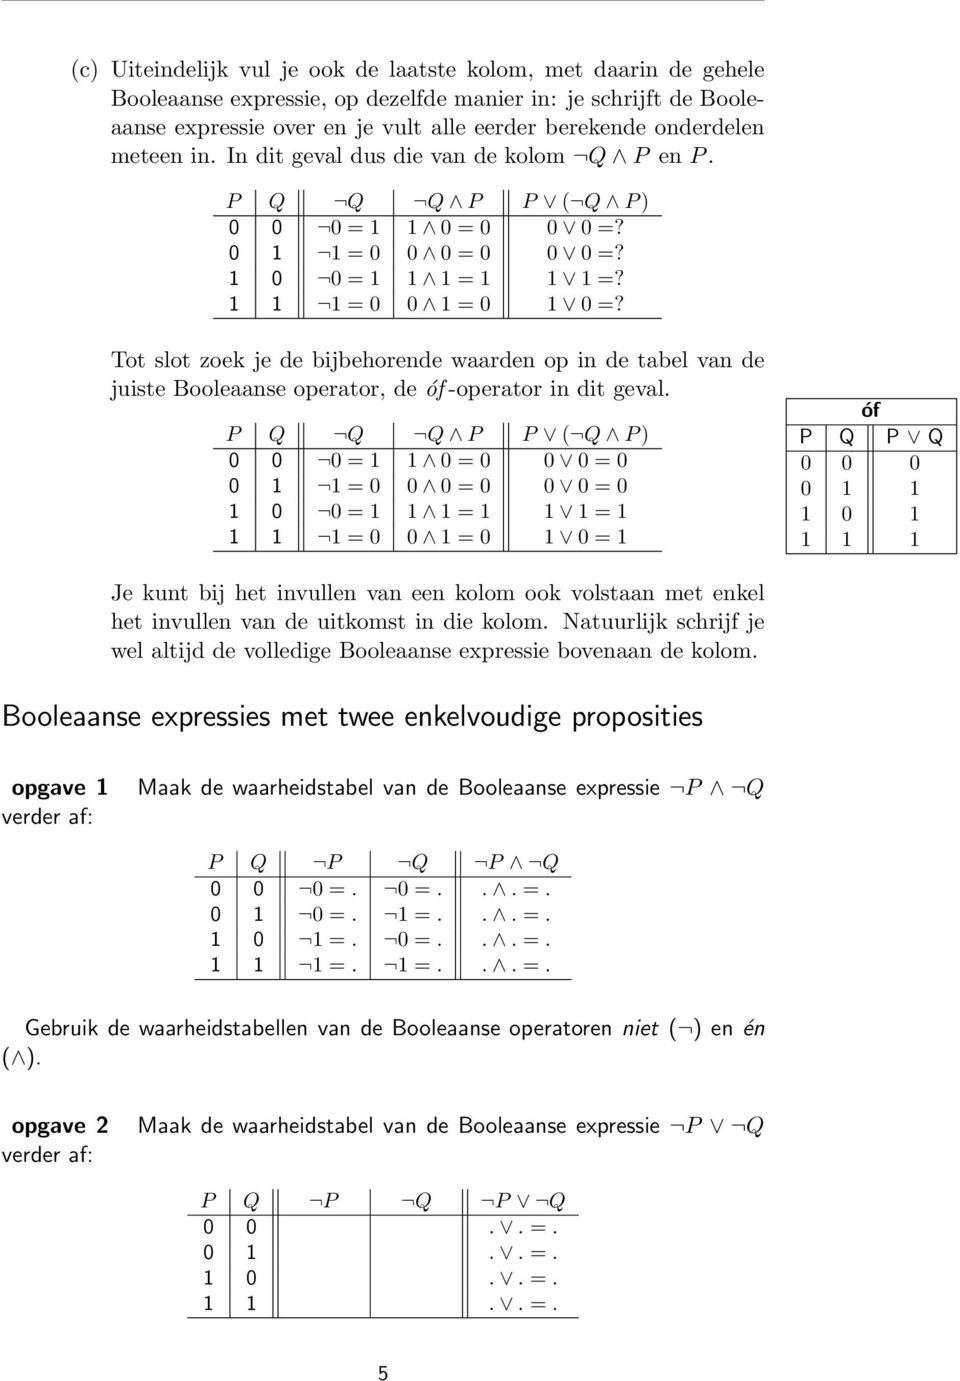 Tot slot zoek je de bijbehorende waarden op in de tabel van de juiste Booleaanse operator, de óf -operator in dit geval.